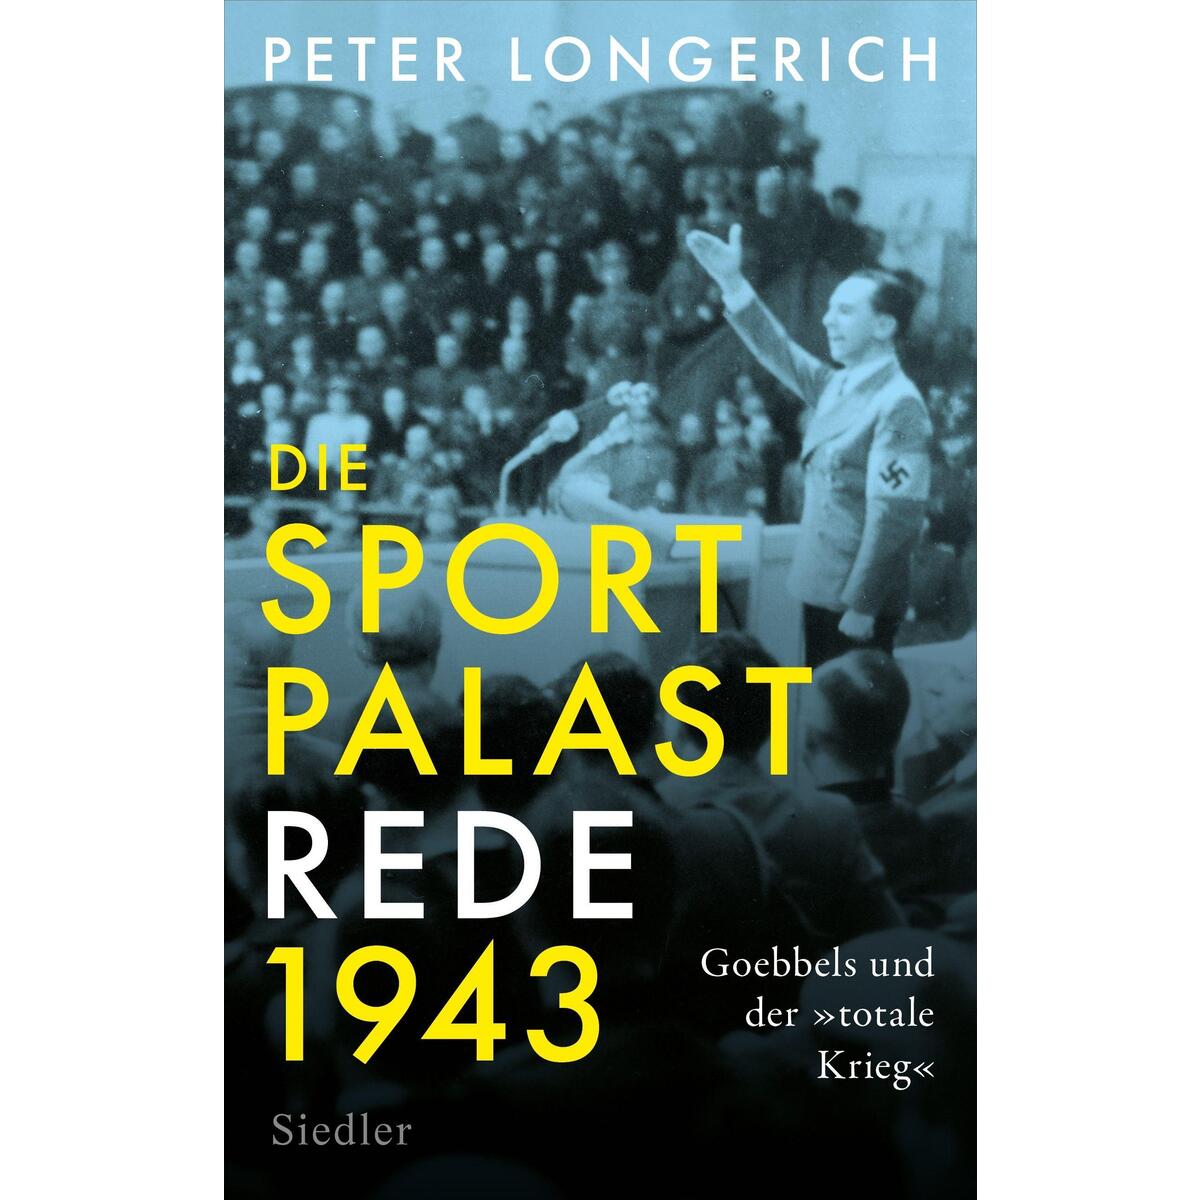 Die Sportpalast-Rede 1943 von Siedler Verlag